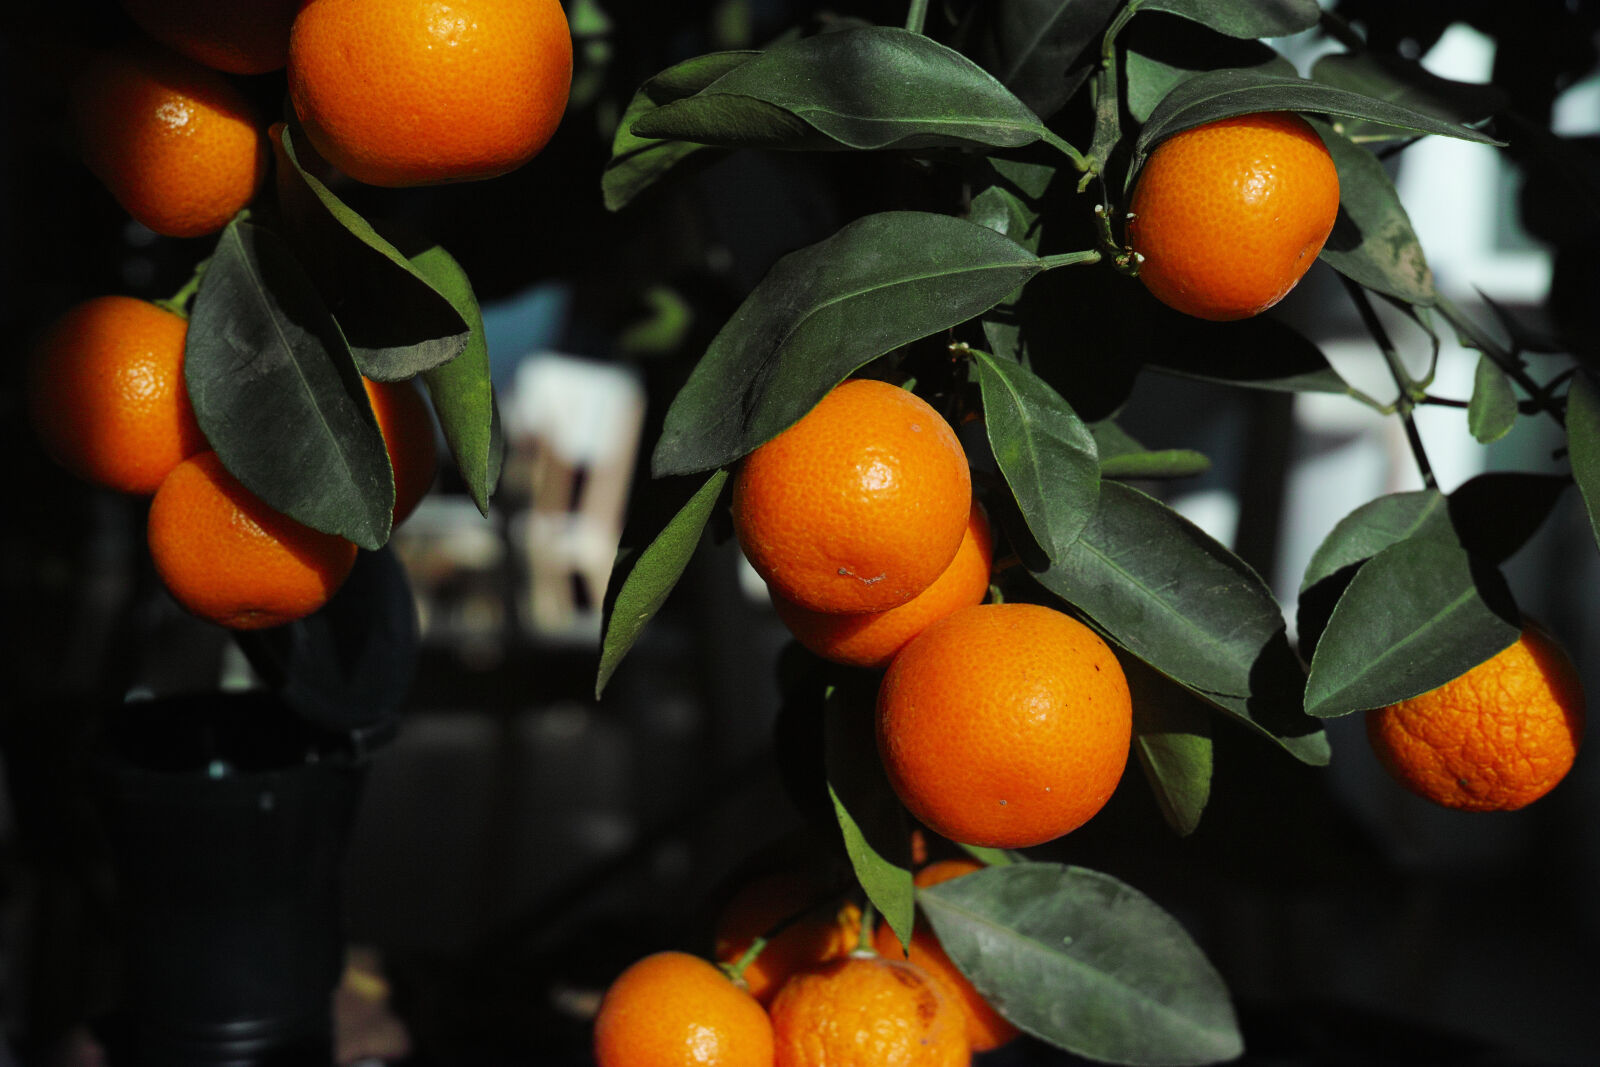 Sigma dp2 Quattro sample photo. Oranges of orange photography